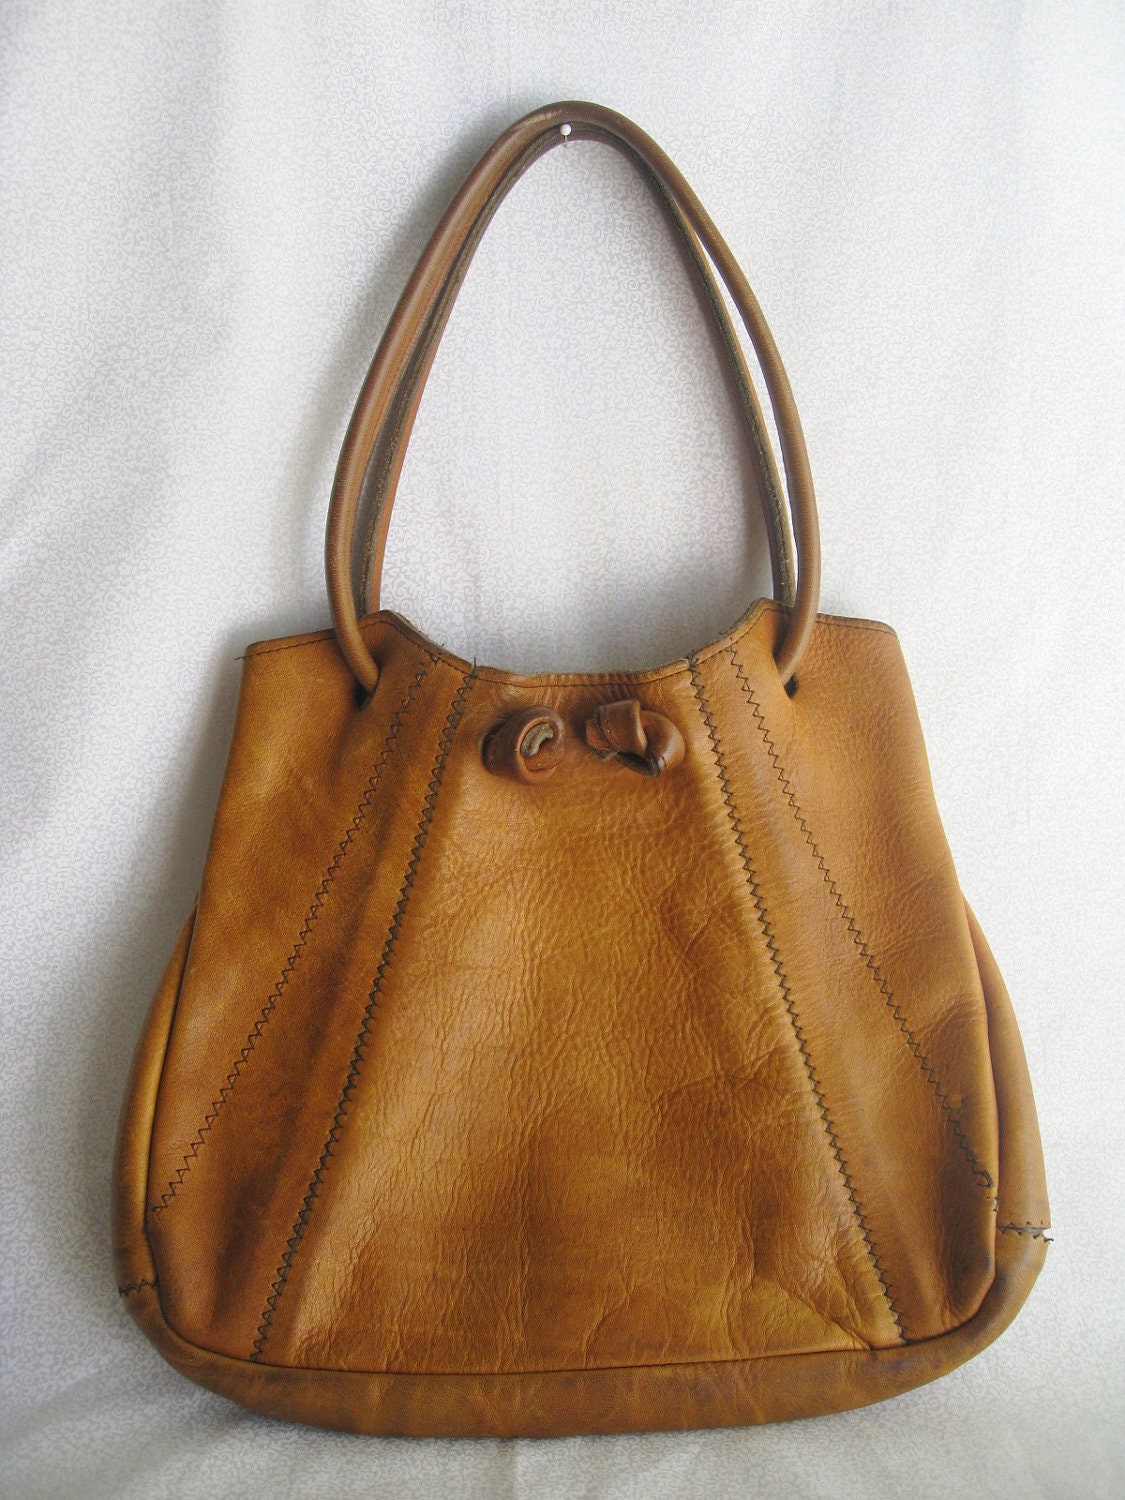 Boho leather bag/vintage caramel color leather by BohoRain on Etsy